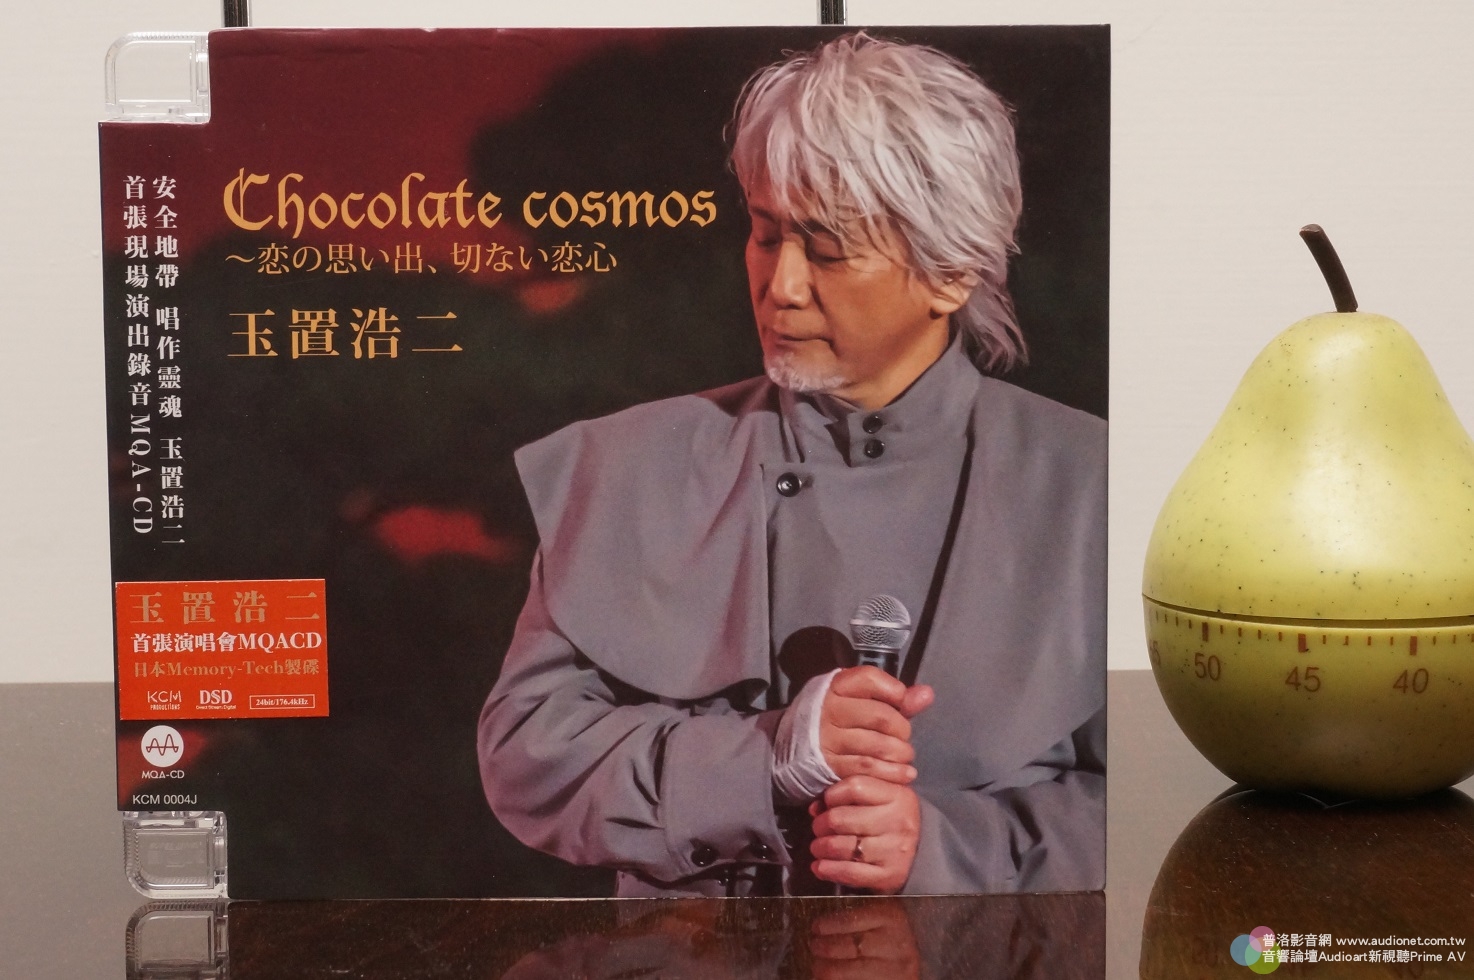 玉置浩二Chocolate Cosmos，東京澀谷Cerulean Tower旅館能樂堂現場演出